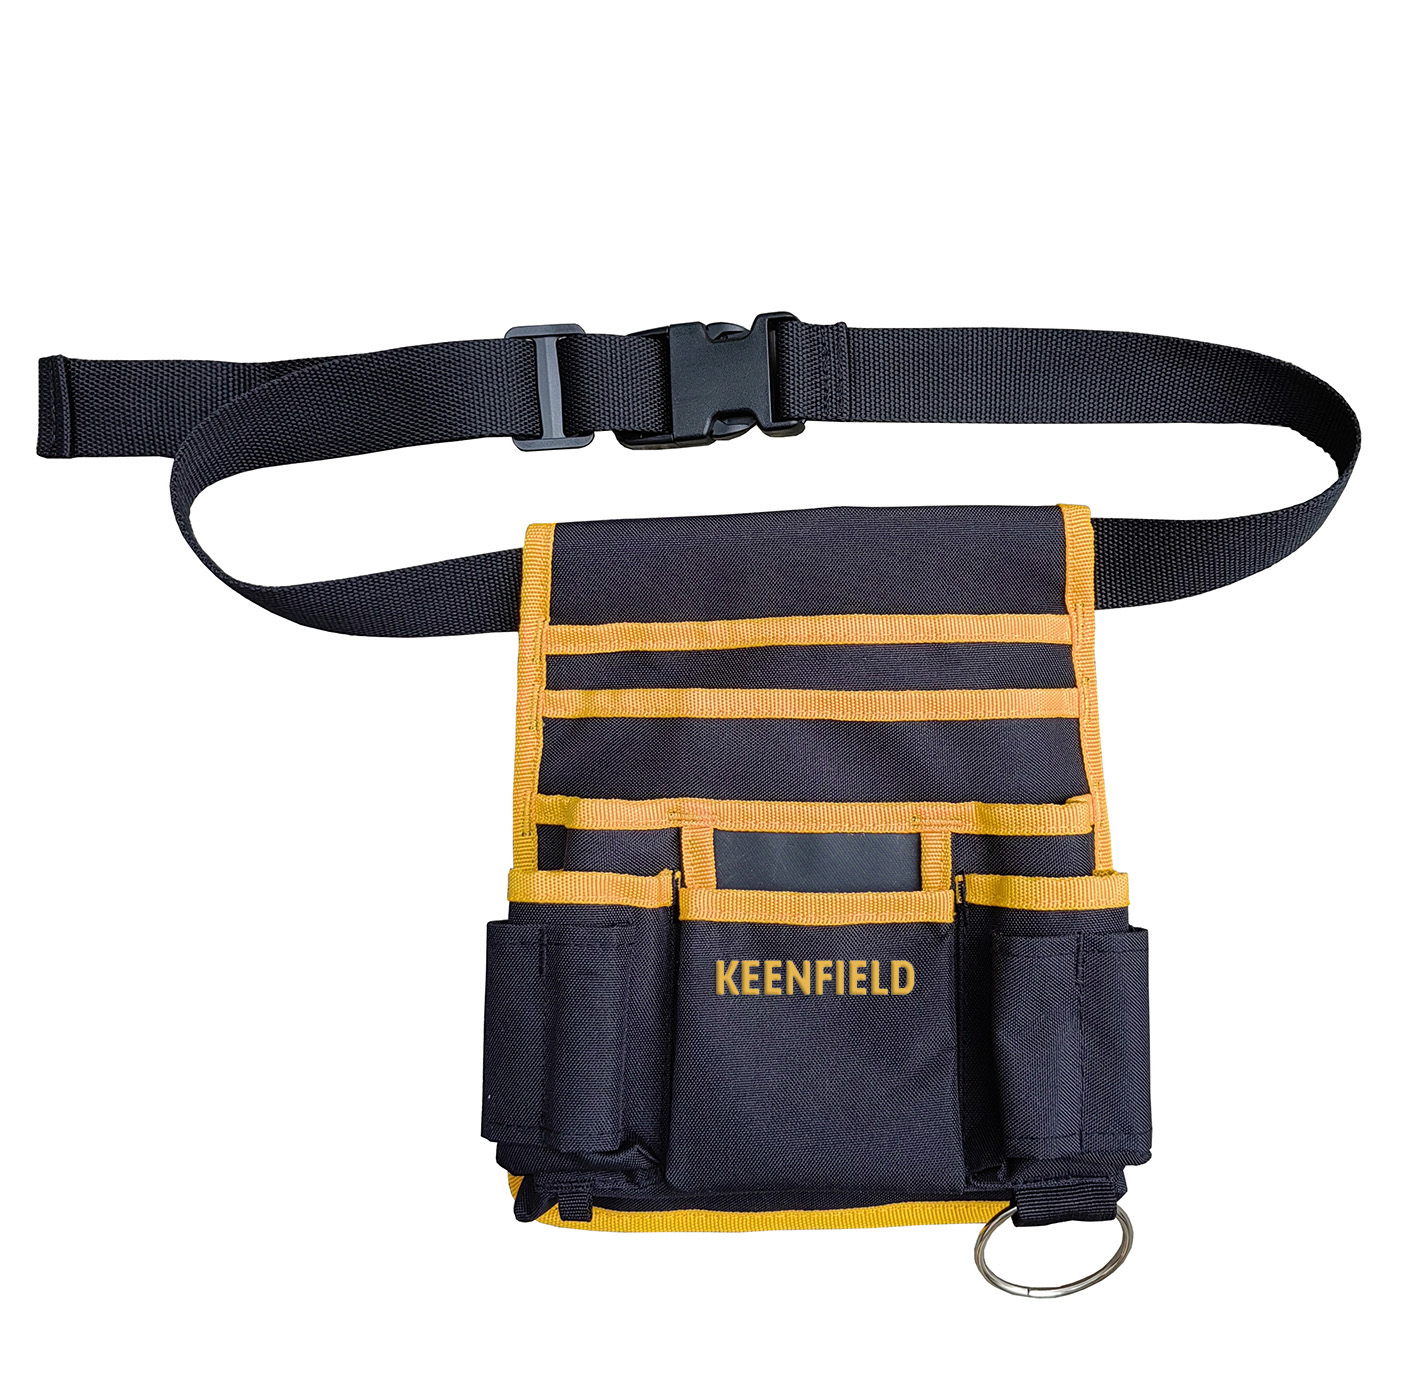 Heavy duty waist pouch adjustable multi-pocket tool belt